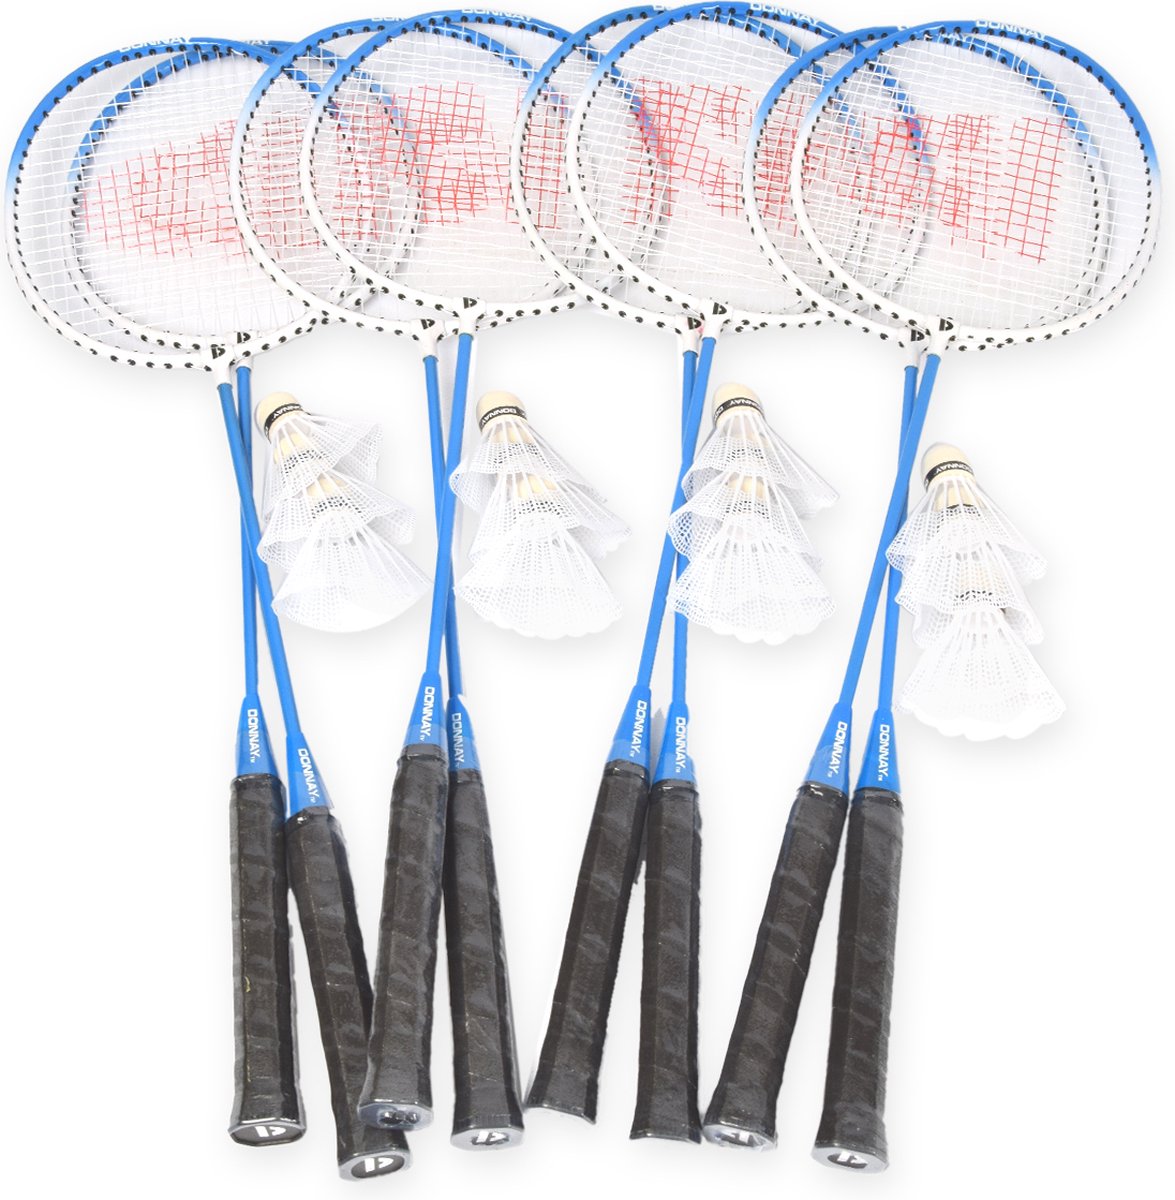 Badminton Set voor 8 Personen - 4 Sets met in totaal 8 Badmintonrackets en 12 Shuttles - Aluminium en BIO PLASTIC - Blauw